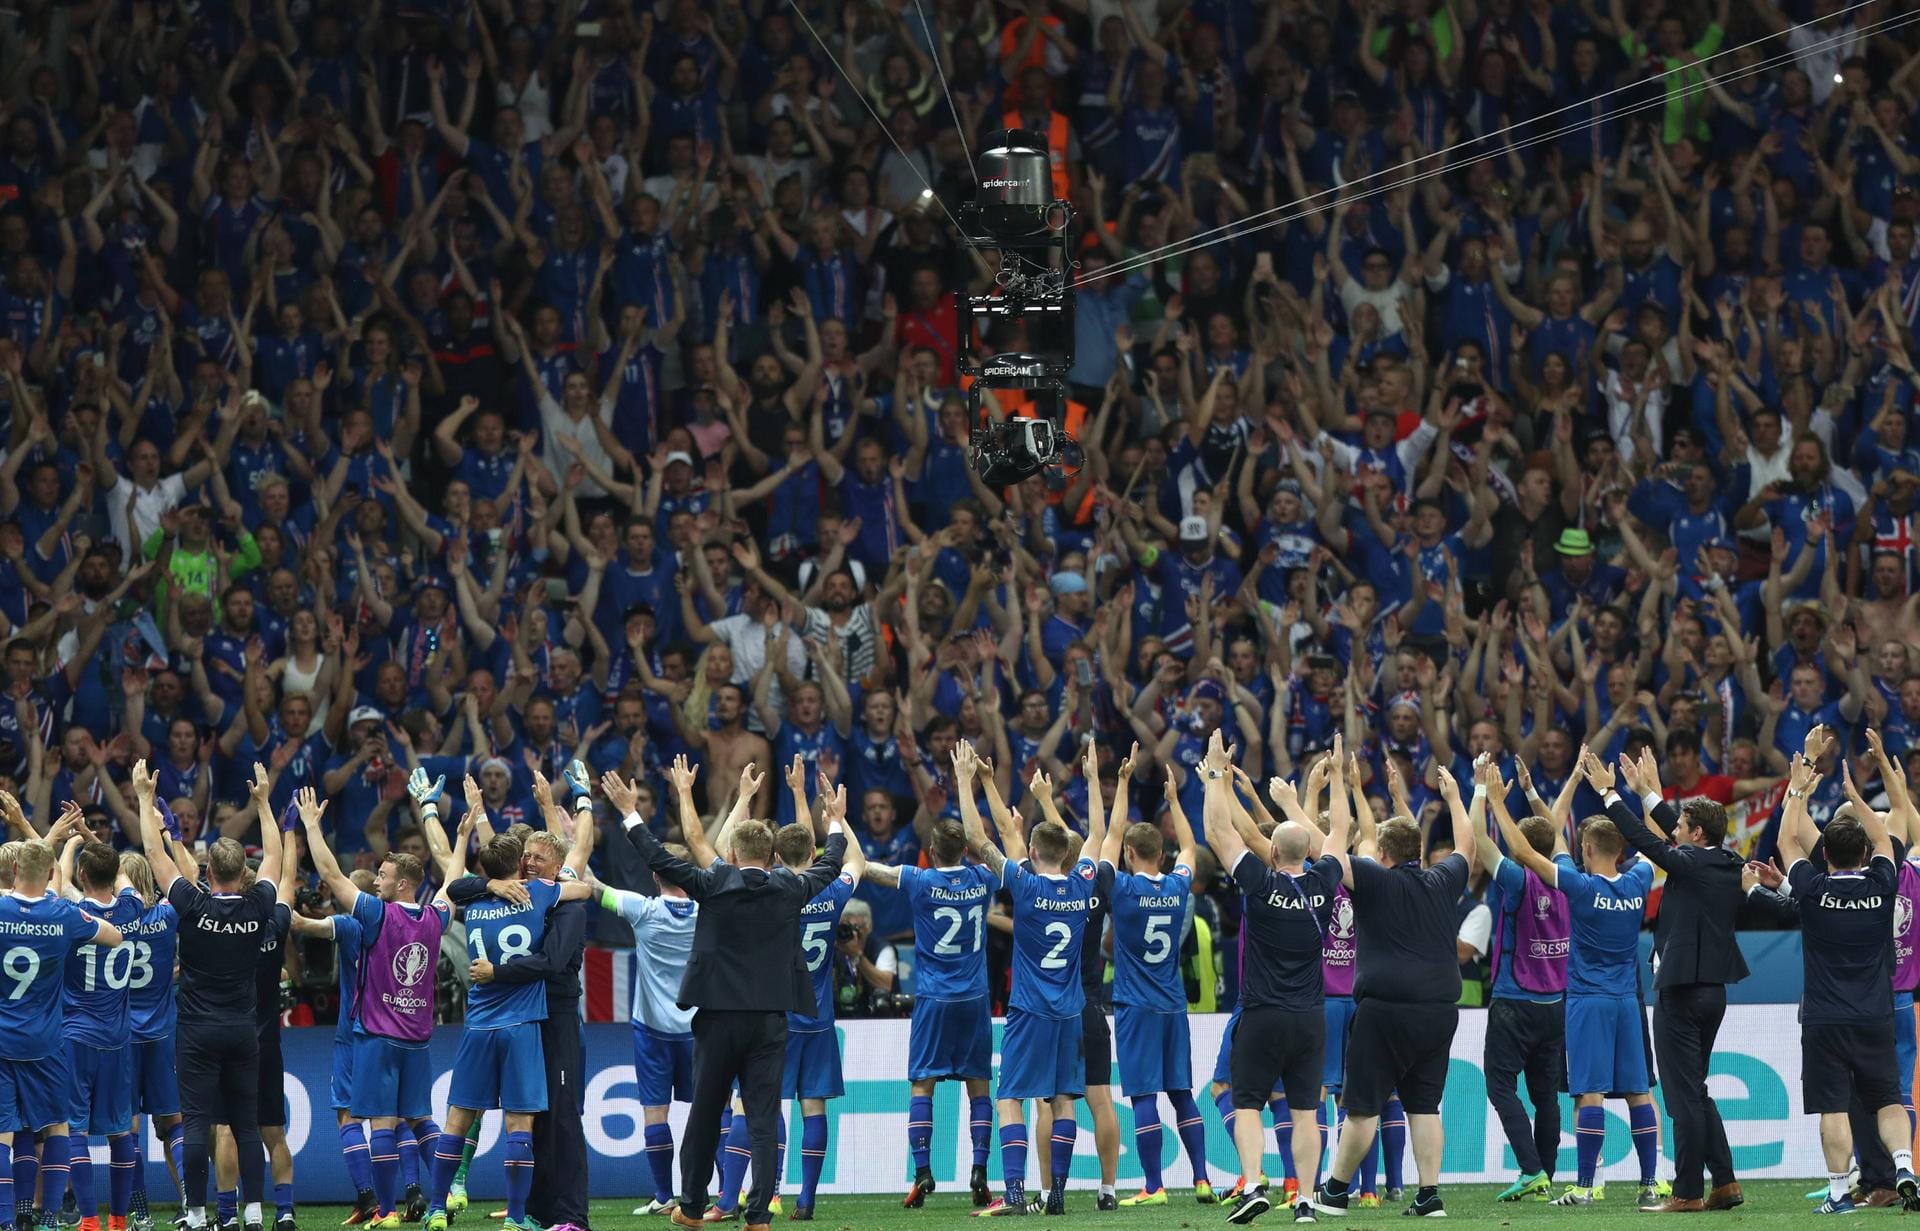 So sieht die Siegesfreude auf isländisch aus.